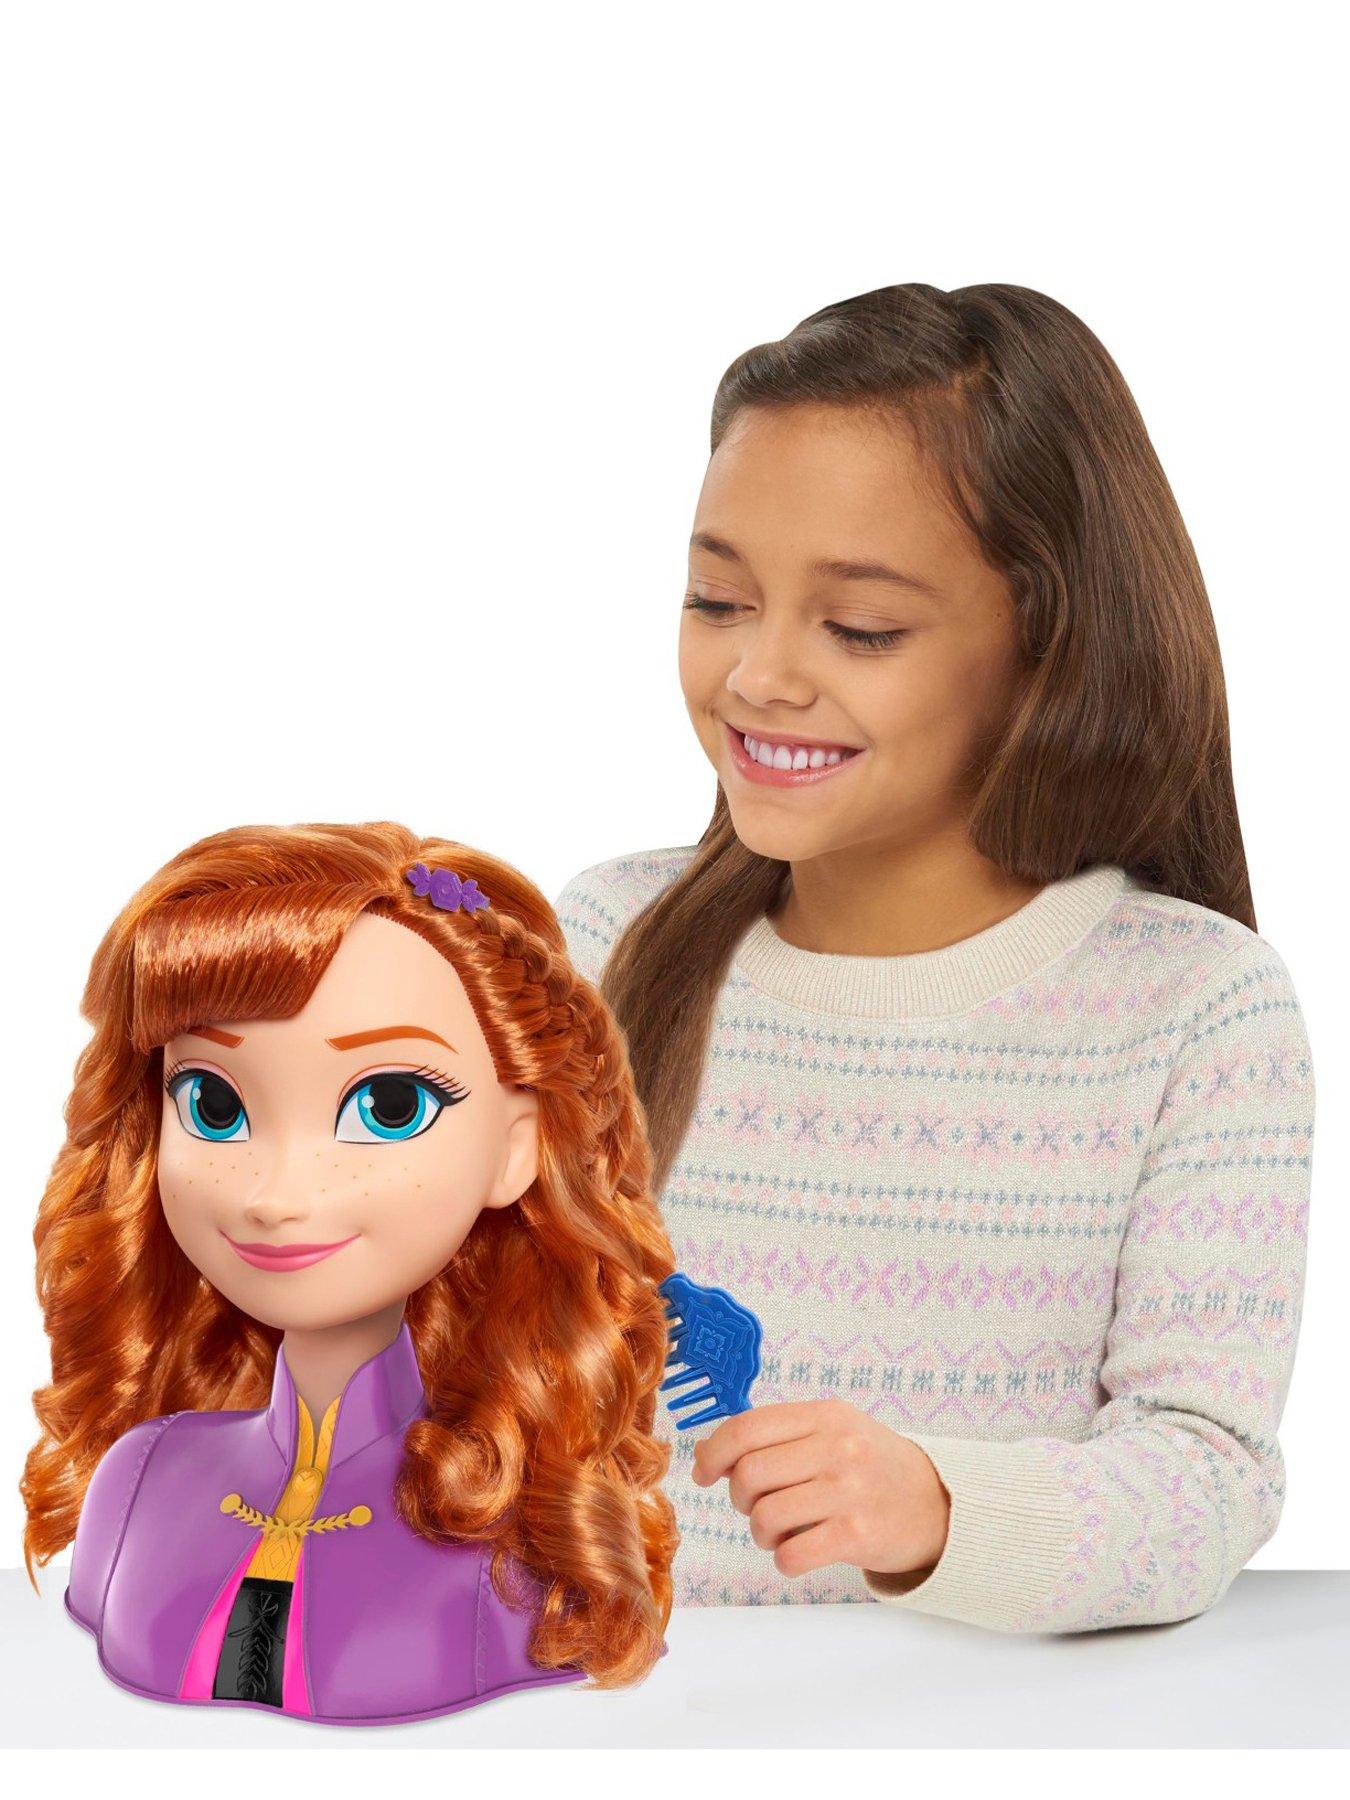 Disney Princess Swim & Splash Colour Change Ariel Doll